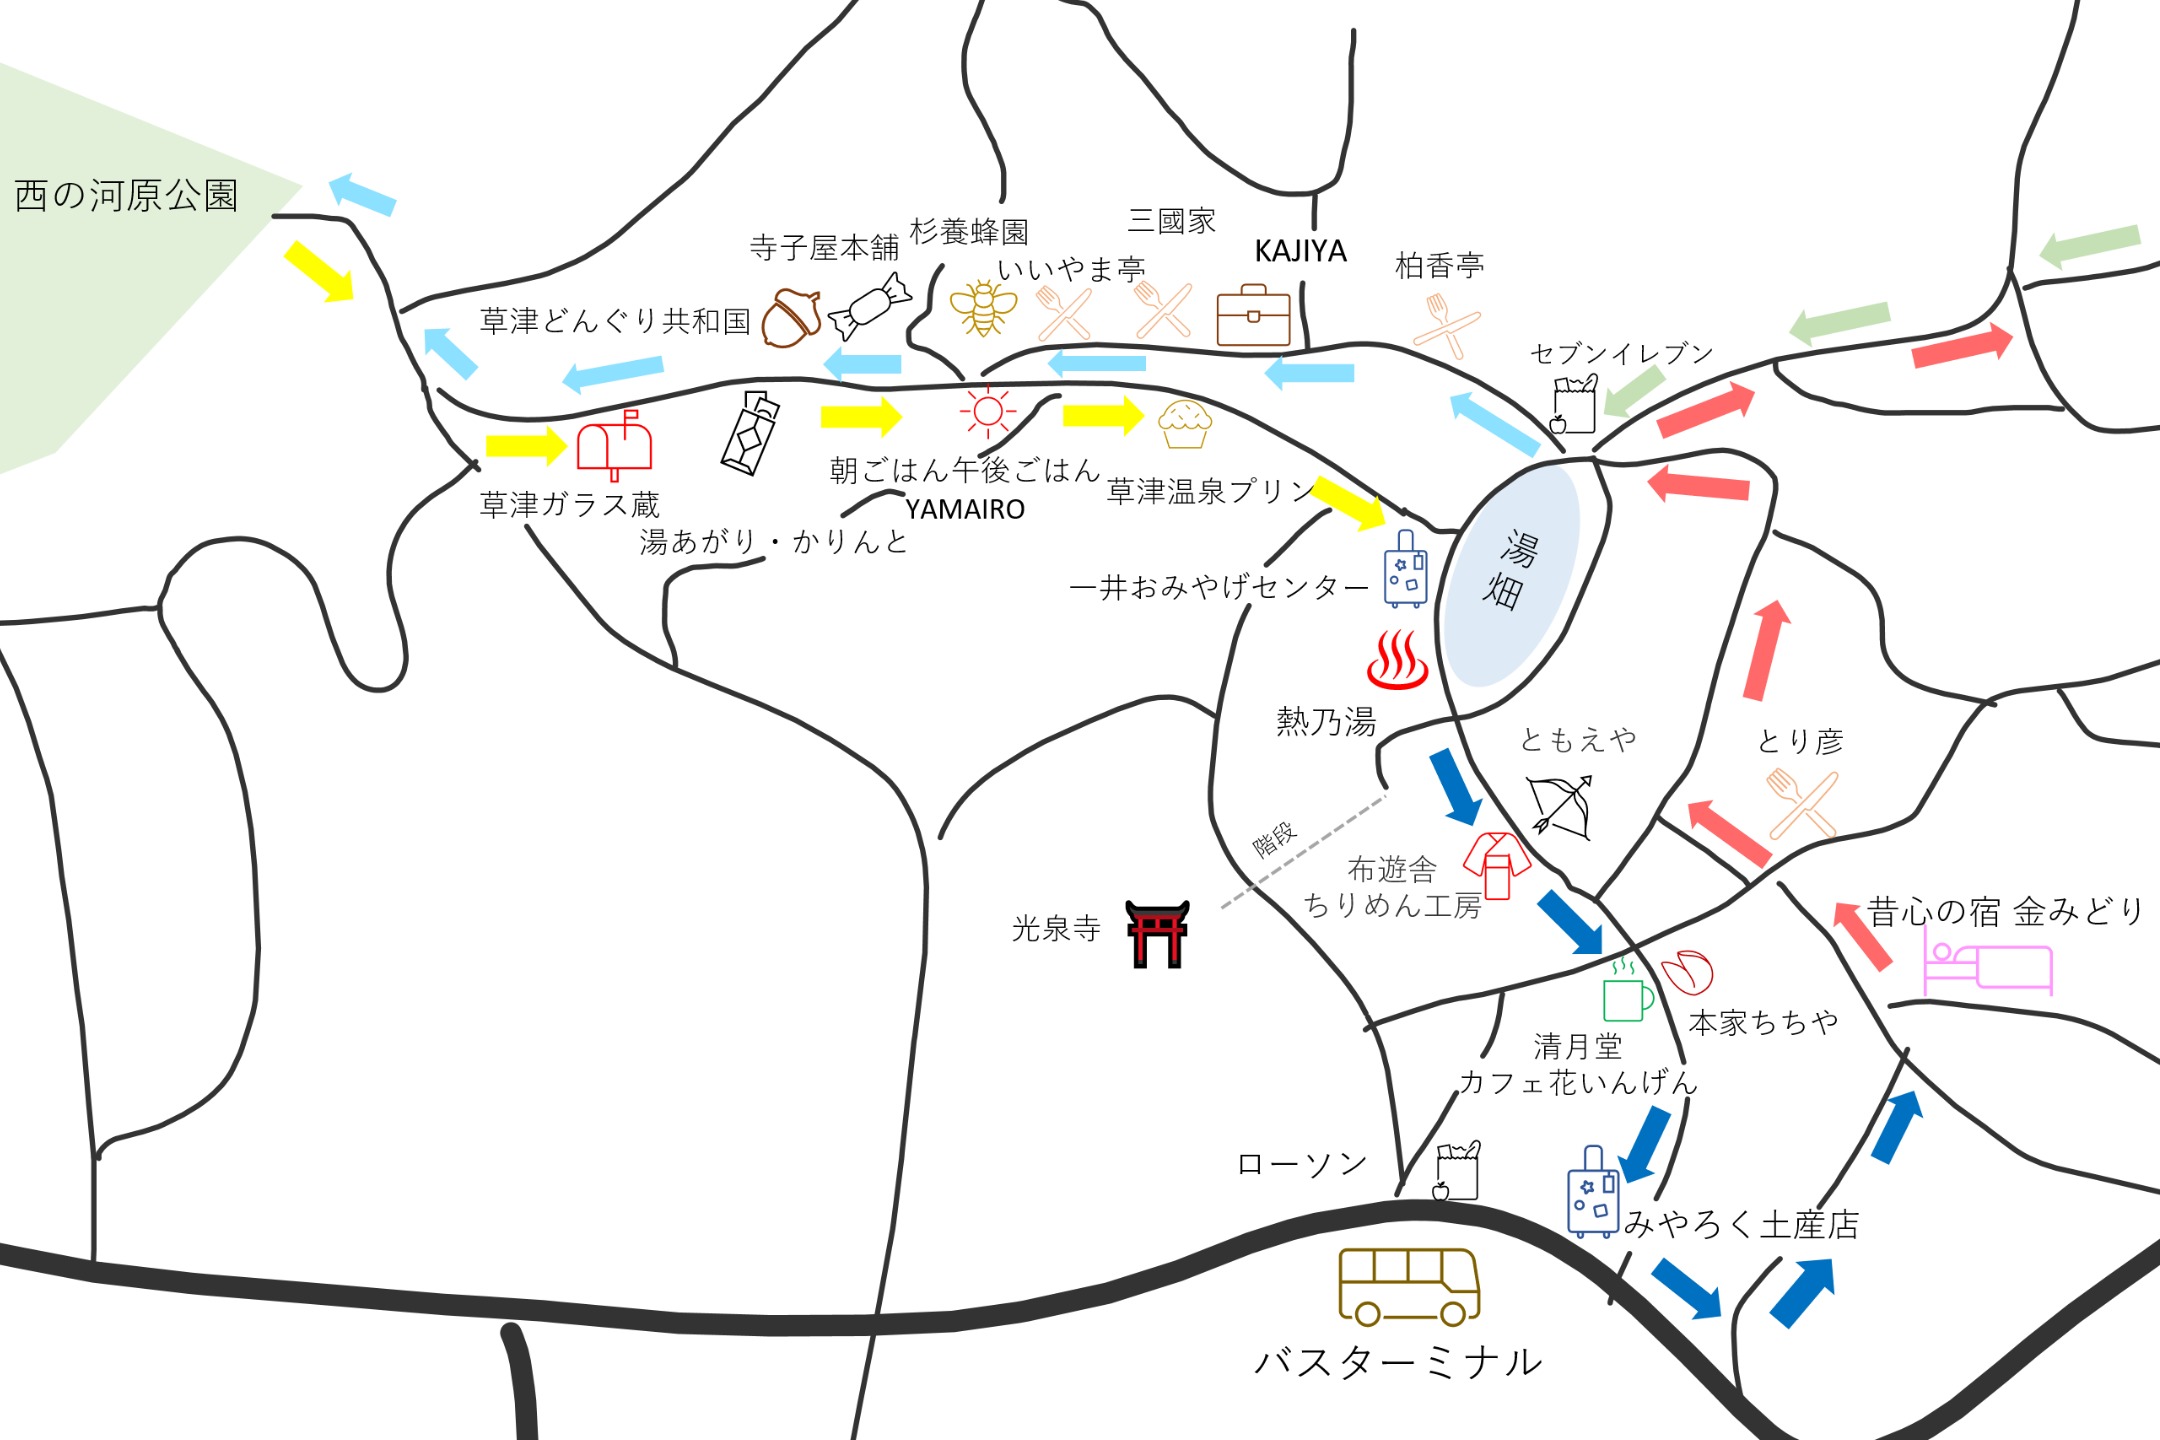 草津温泉湯畑周辺の観光マップ